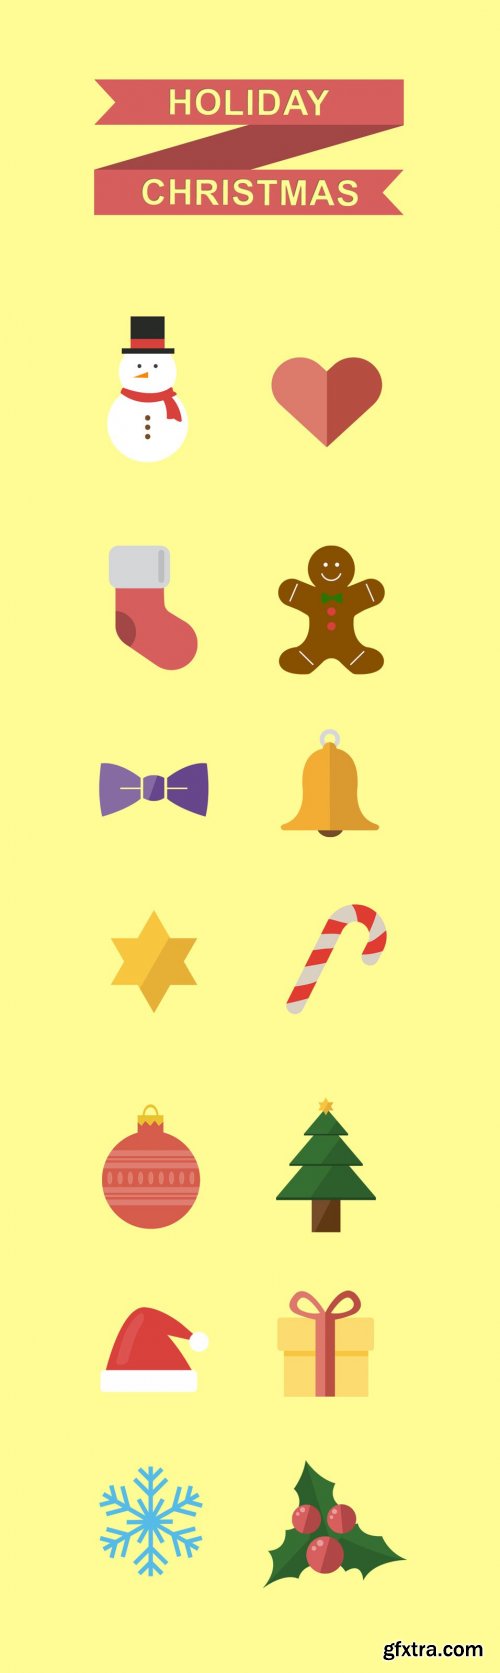 PSD Web Icons - Holiday Christmas Icons 2014